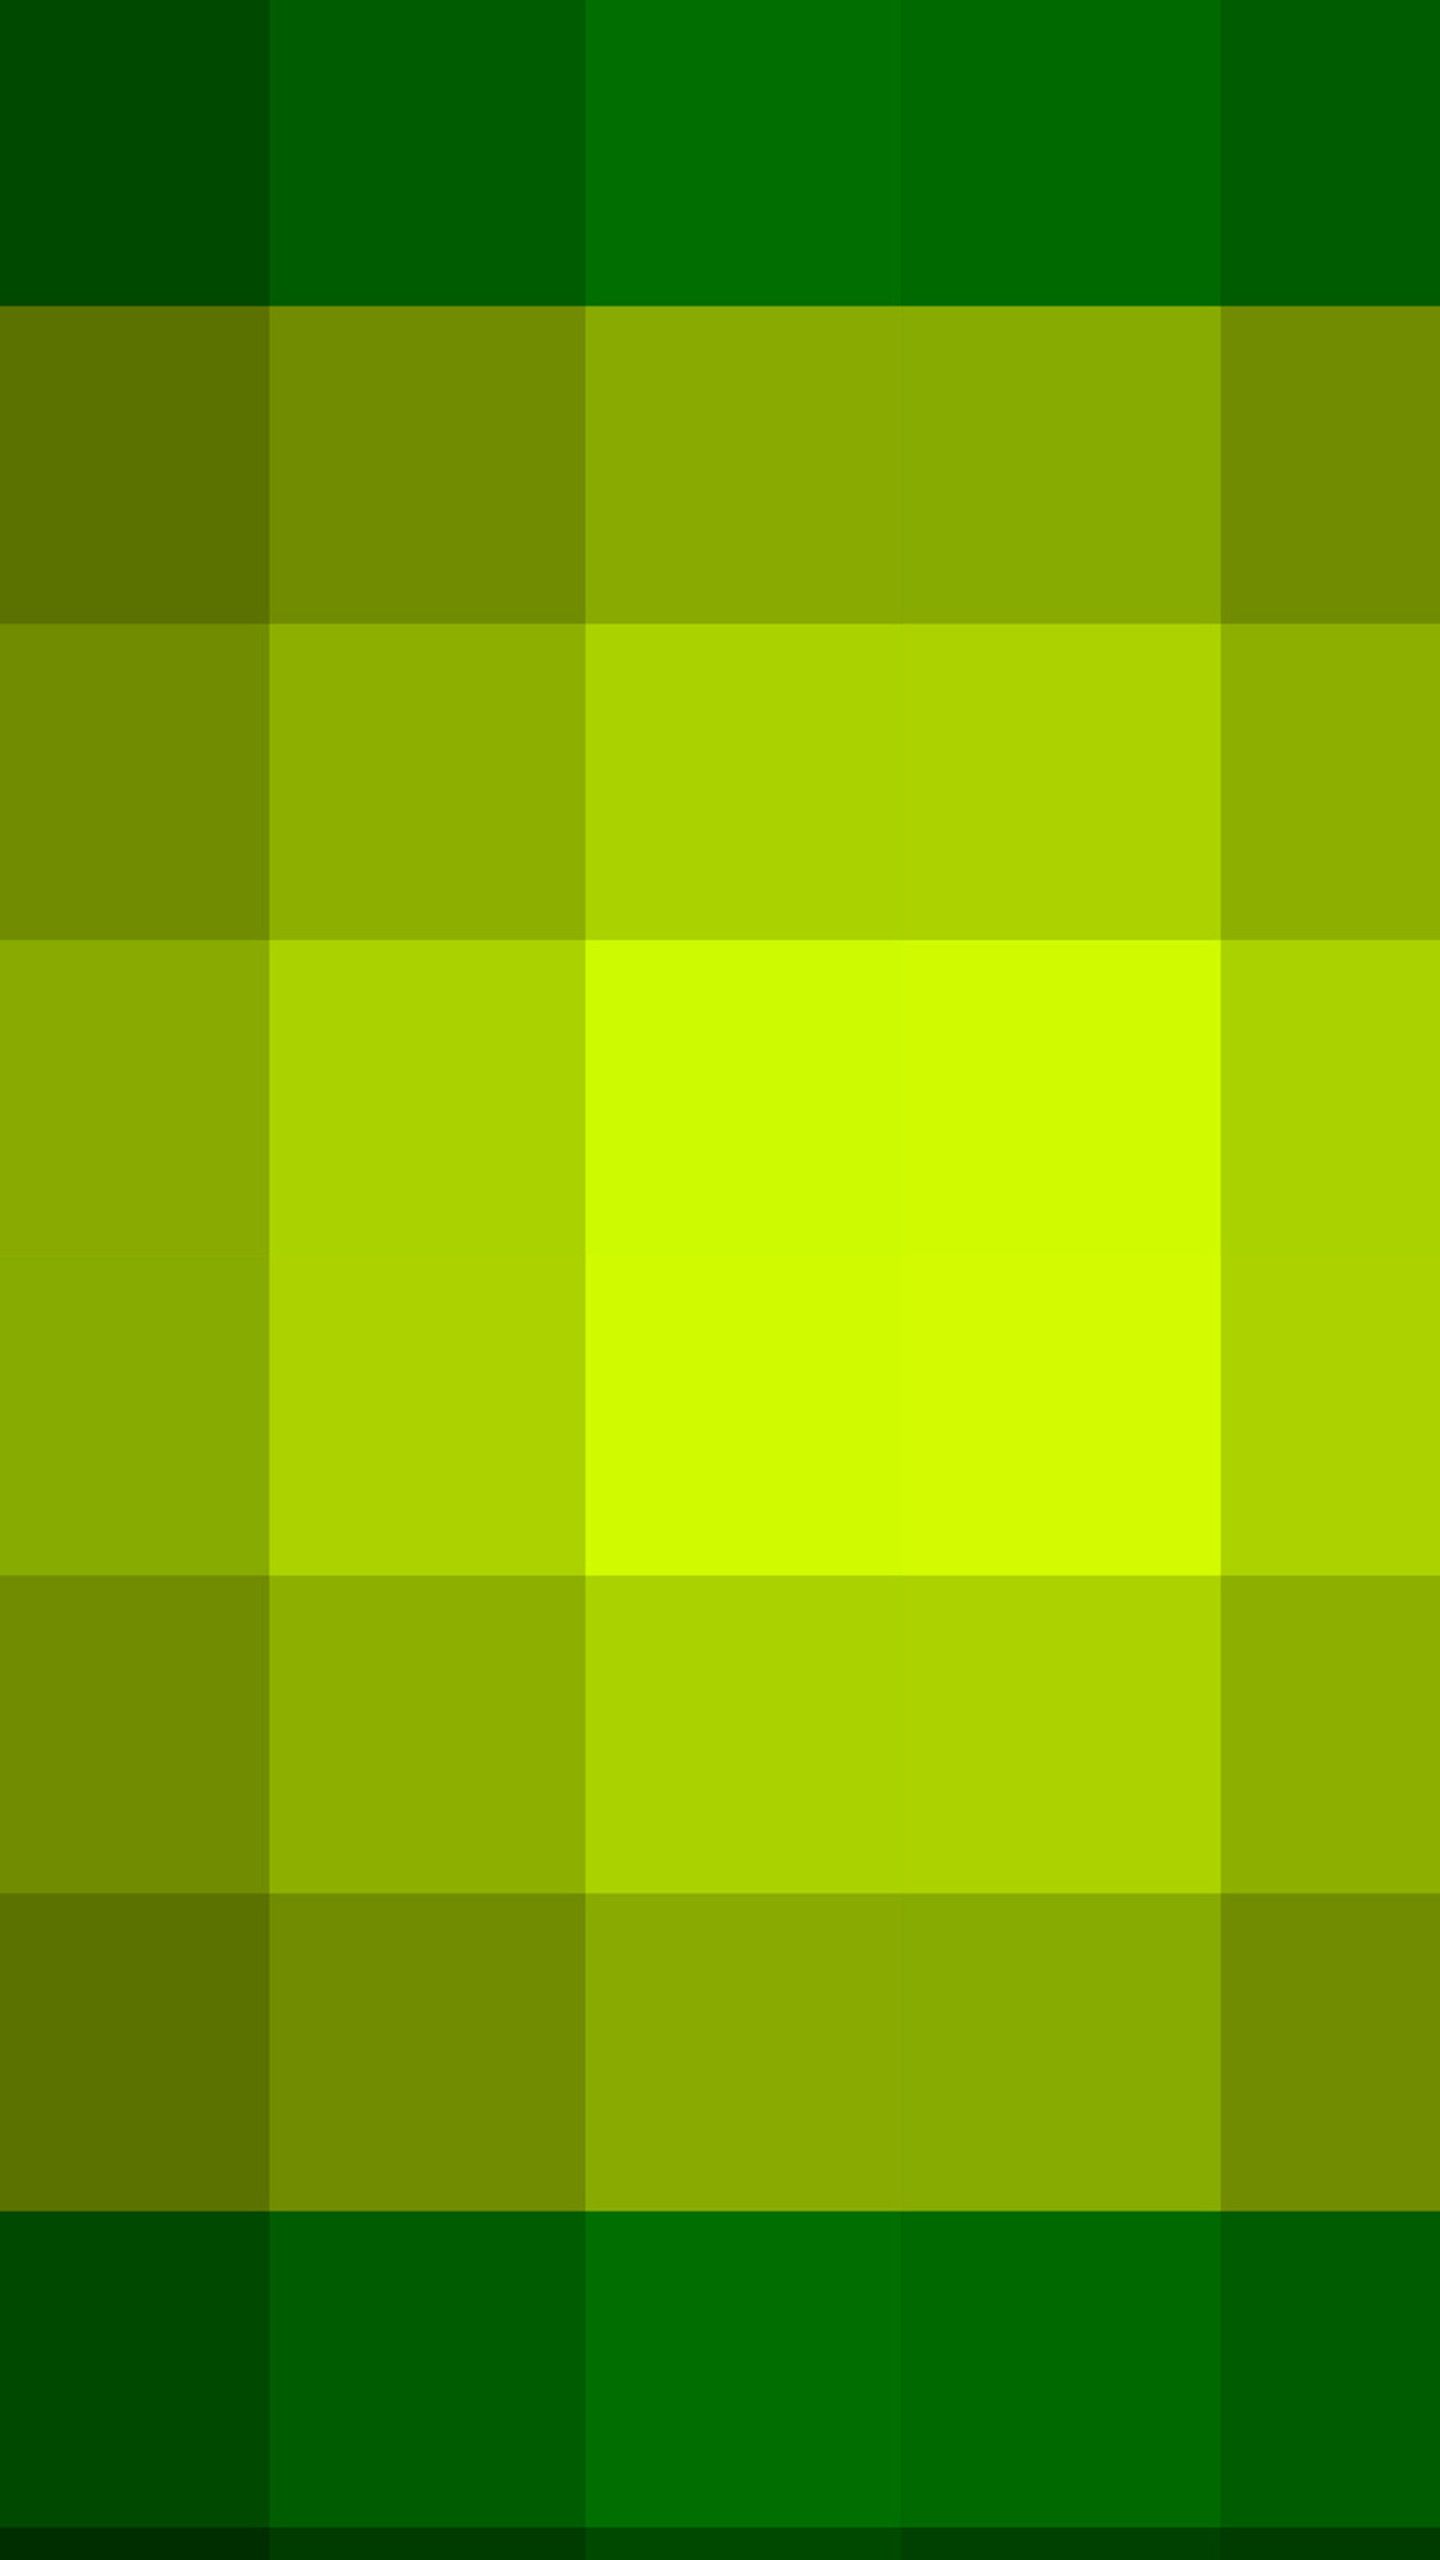 Green Colour Wallpaper Group .wallpapertip.com